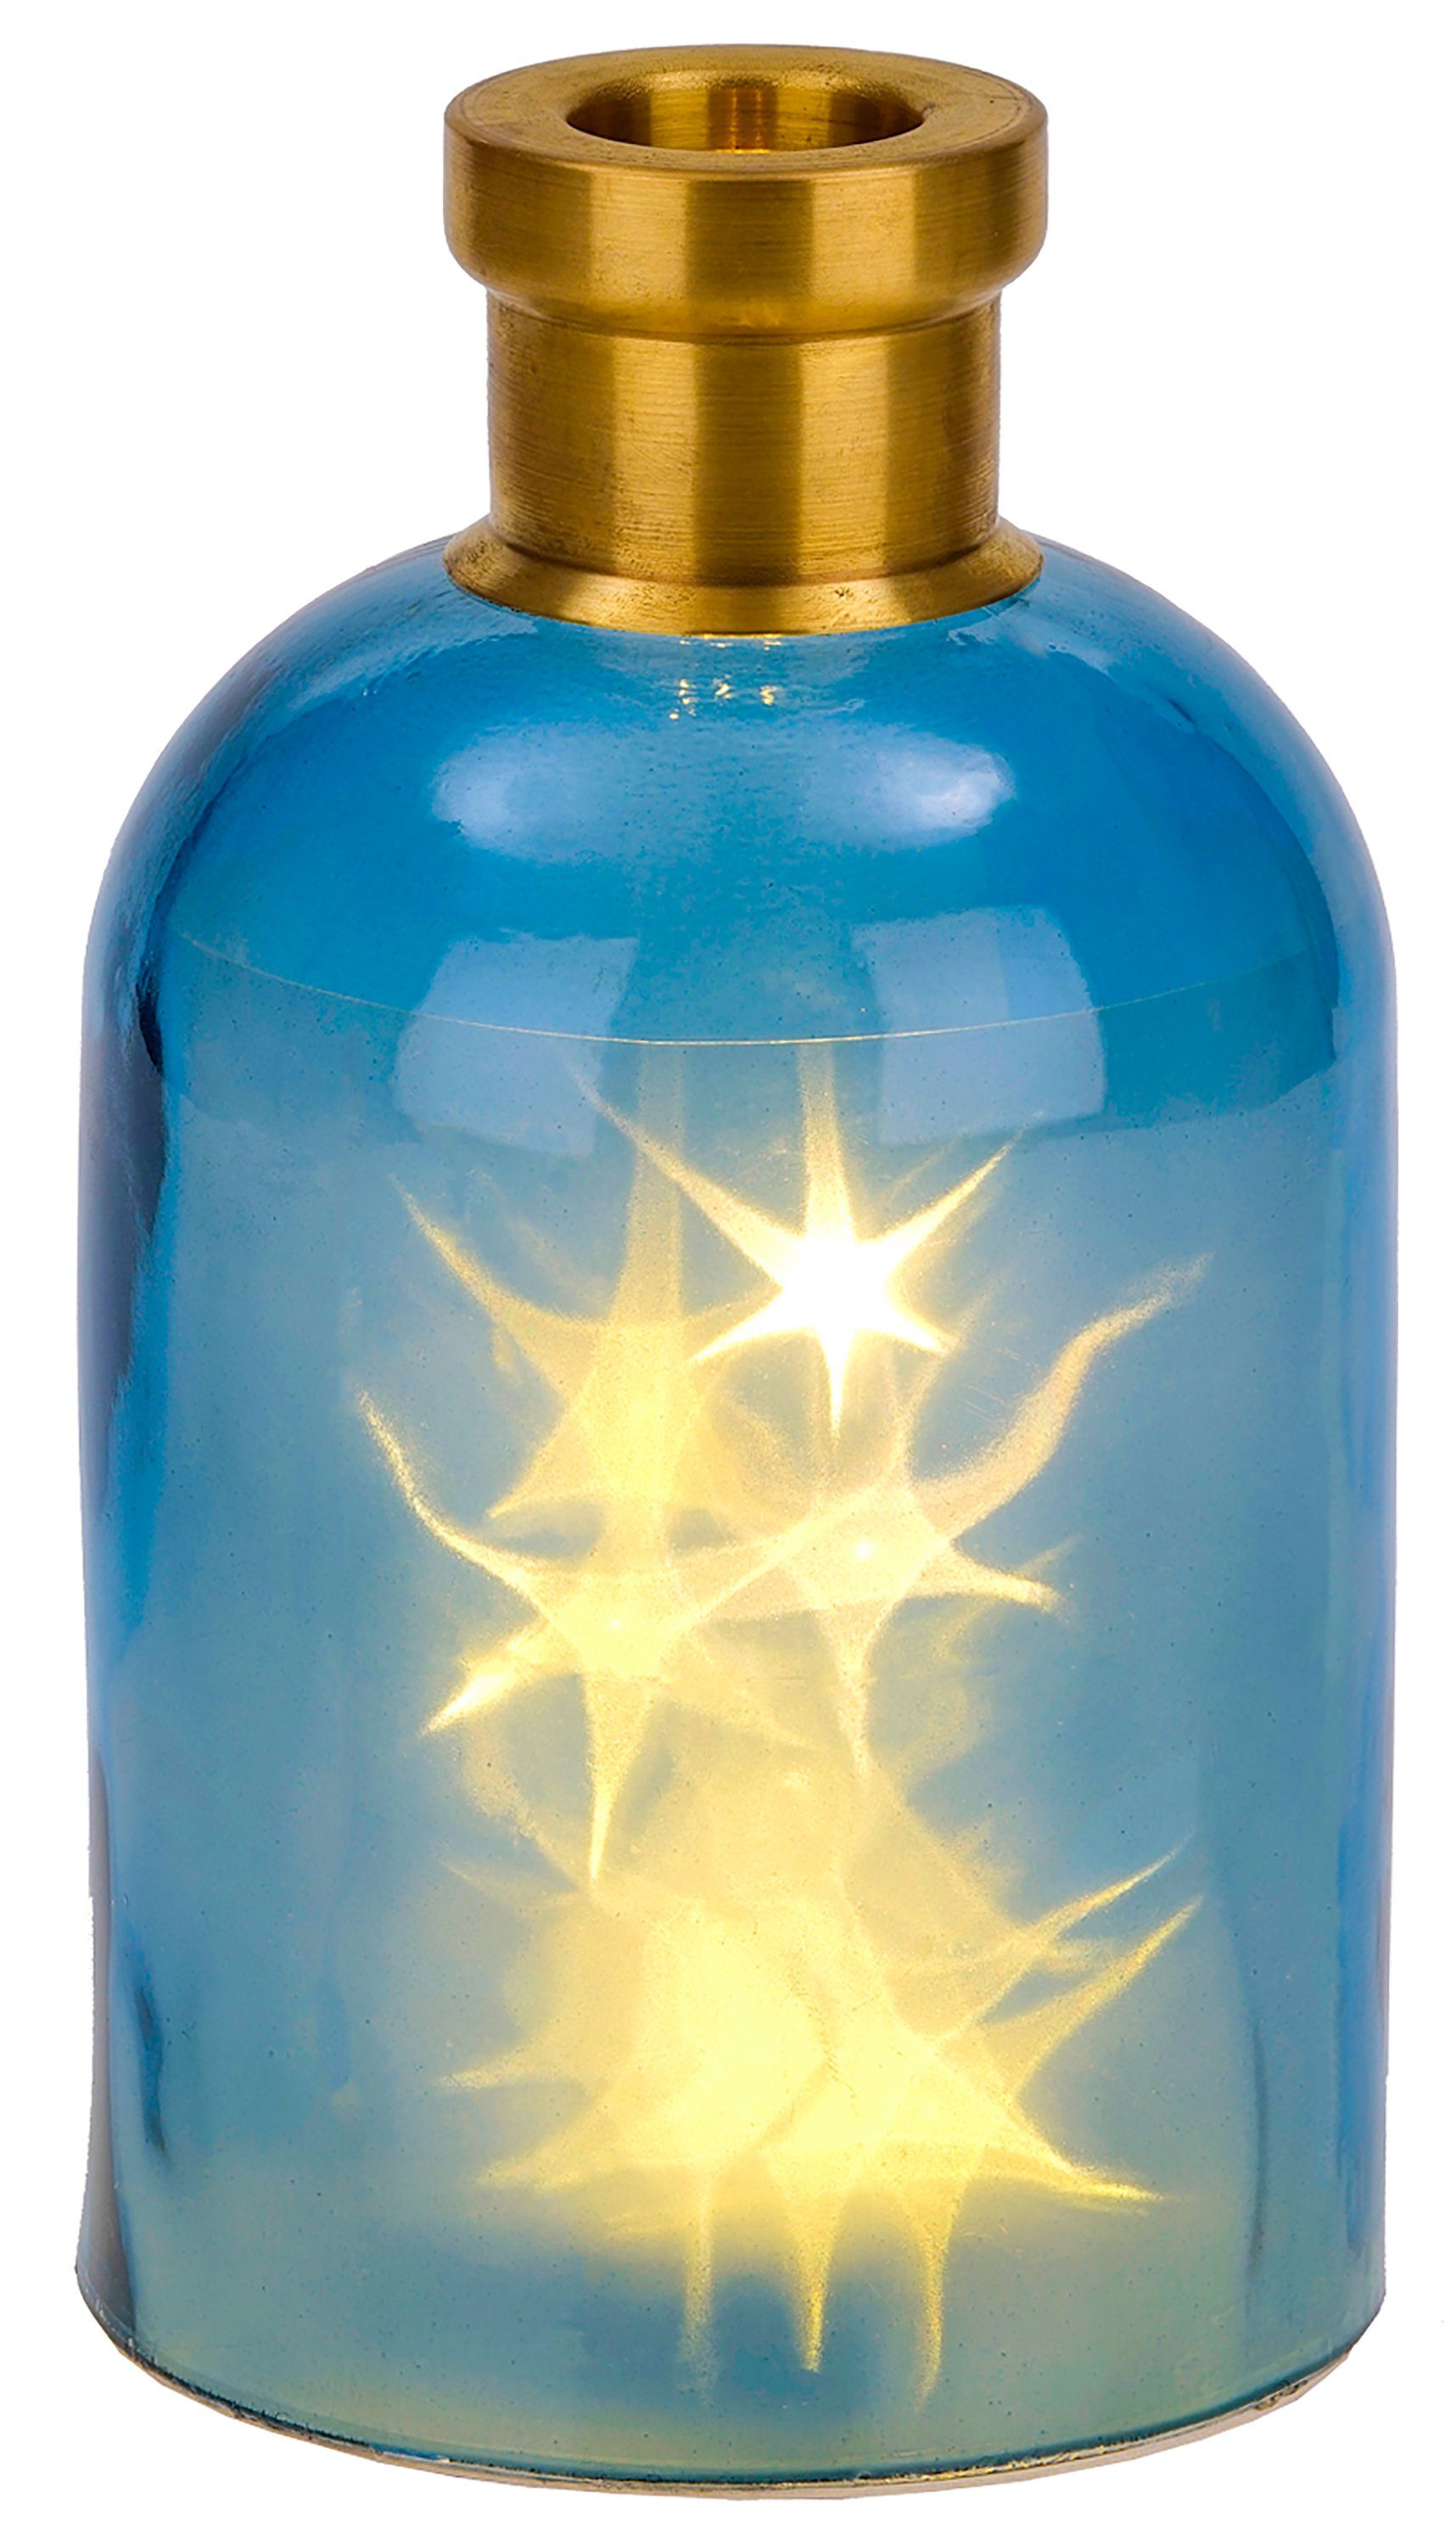 BRUBAKER LED Dekolicht Lichterflasche "Magie" mit 10 LED Sternen, LED Lichterkette, Warmweiß, Dekoleuchte, Party Licht Deko, Höhe 24 cm Blau